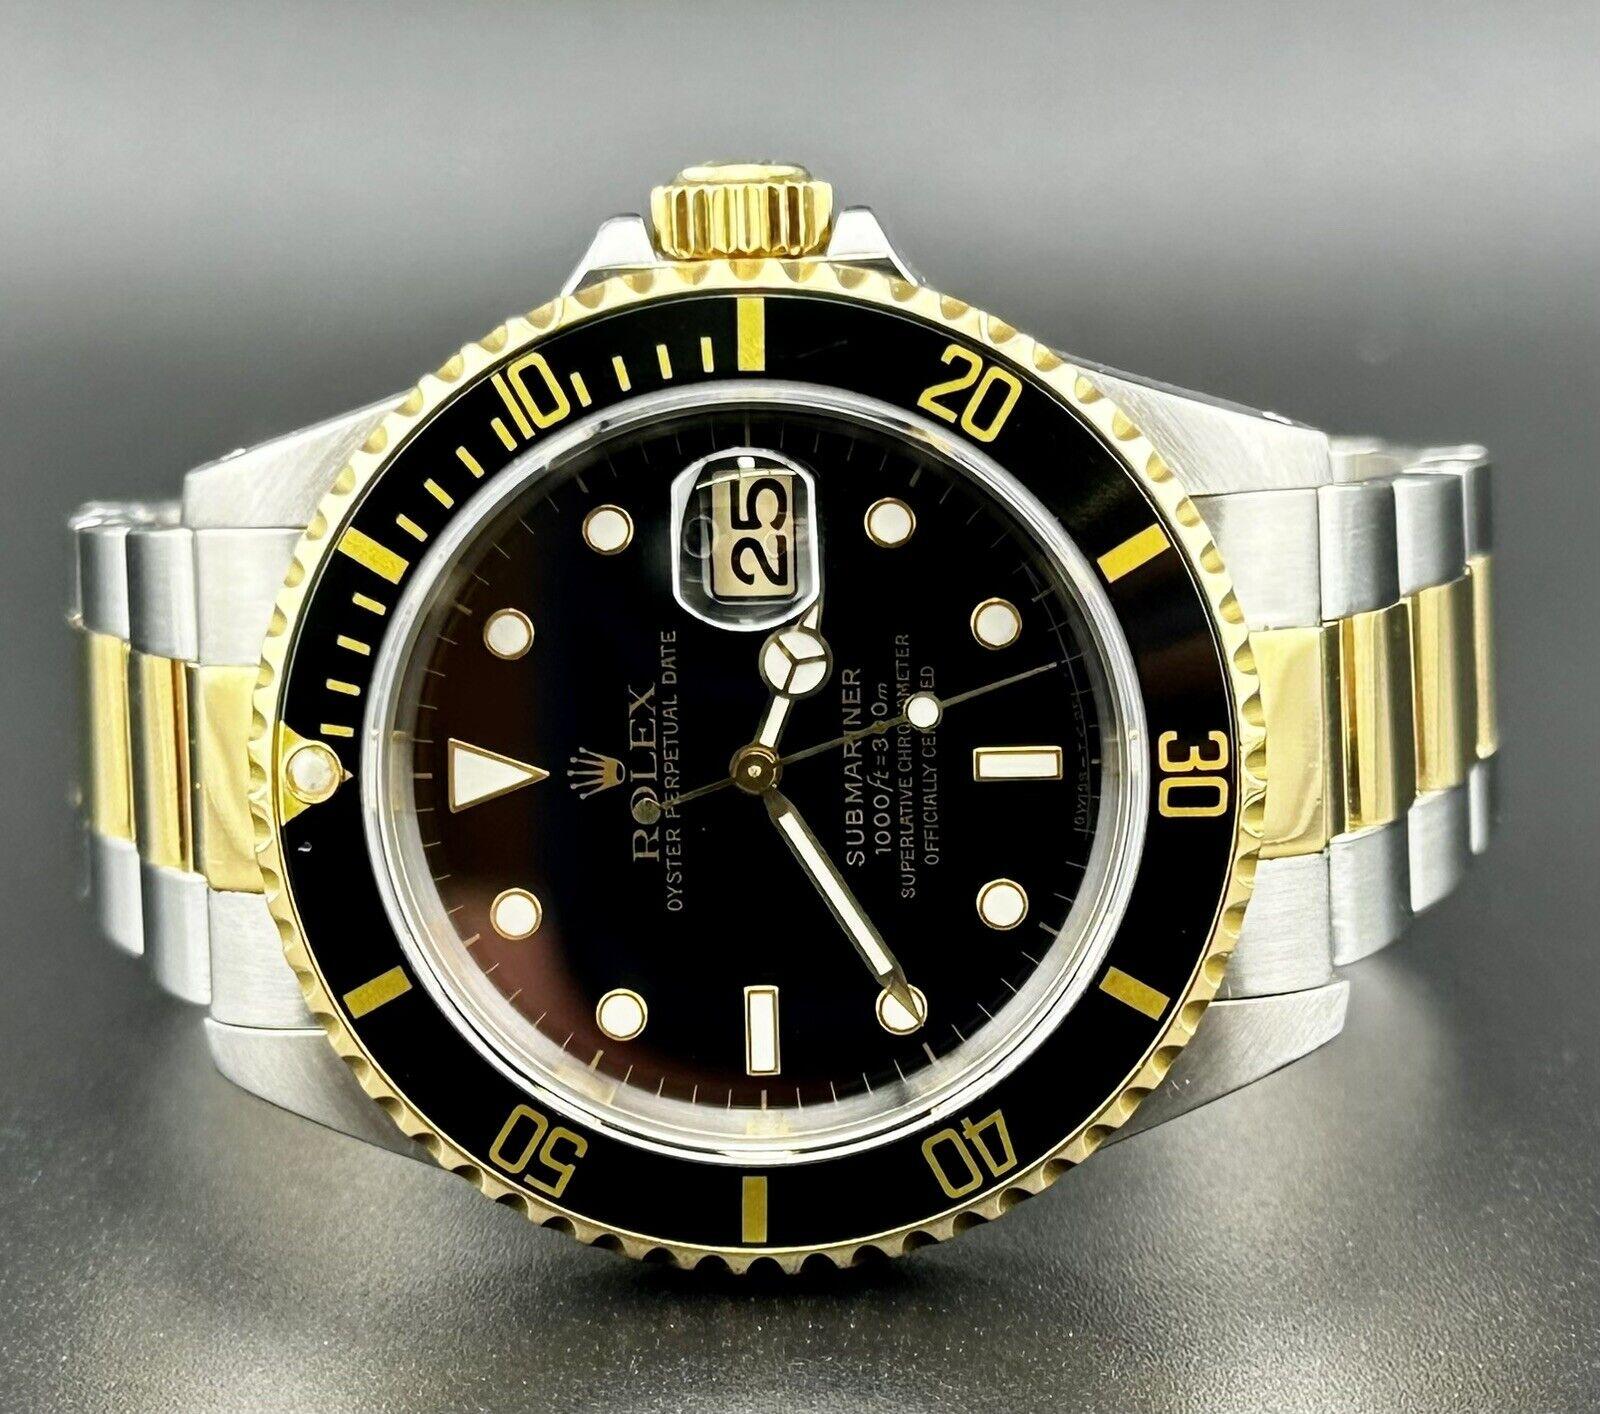 Rolex Submariner 40mm. Une montre d'occasion avec boîte et papiers d'origine. La montre est 100% authentique et est livrée avec la carte d'authenticité Swiss Ice. La référence de la montre est 16613 et elle est en très bon état. La couleur du cadran